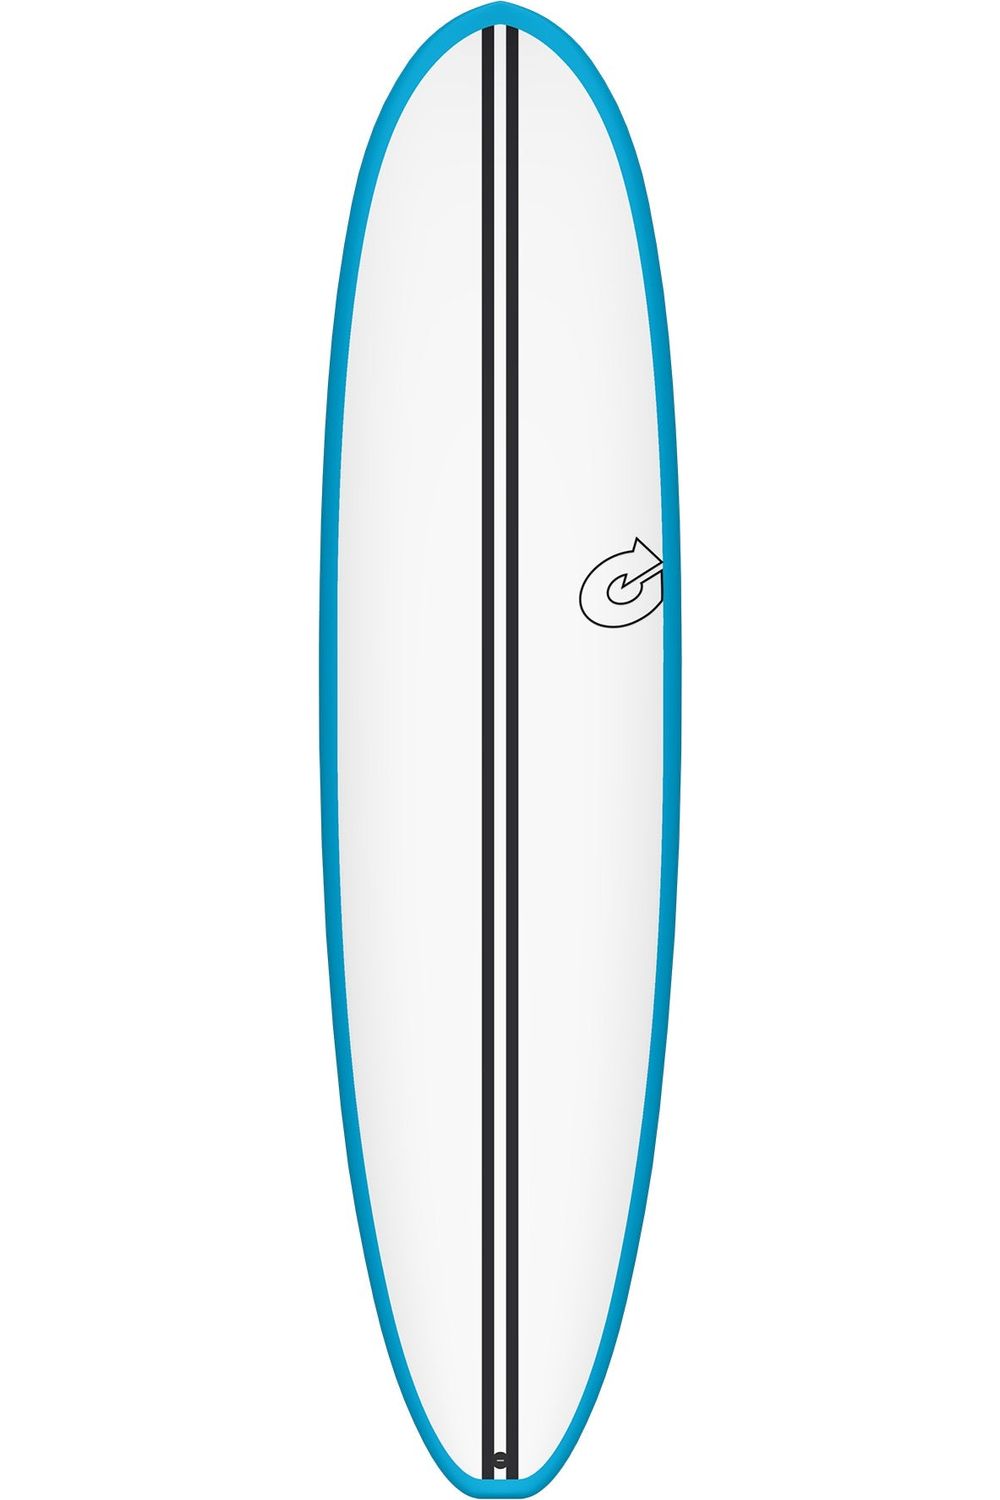 Torq TEC V+ Surfboard In Blue/White